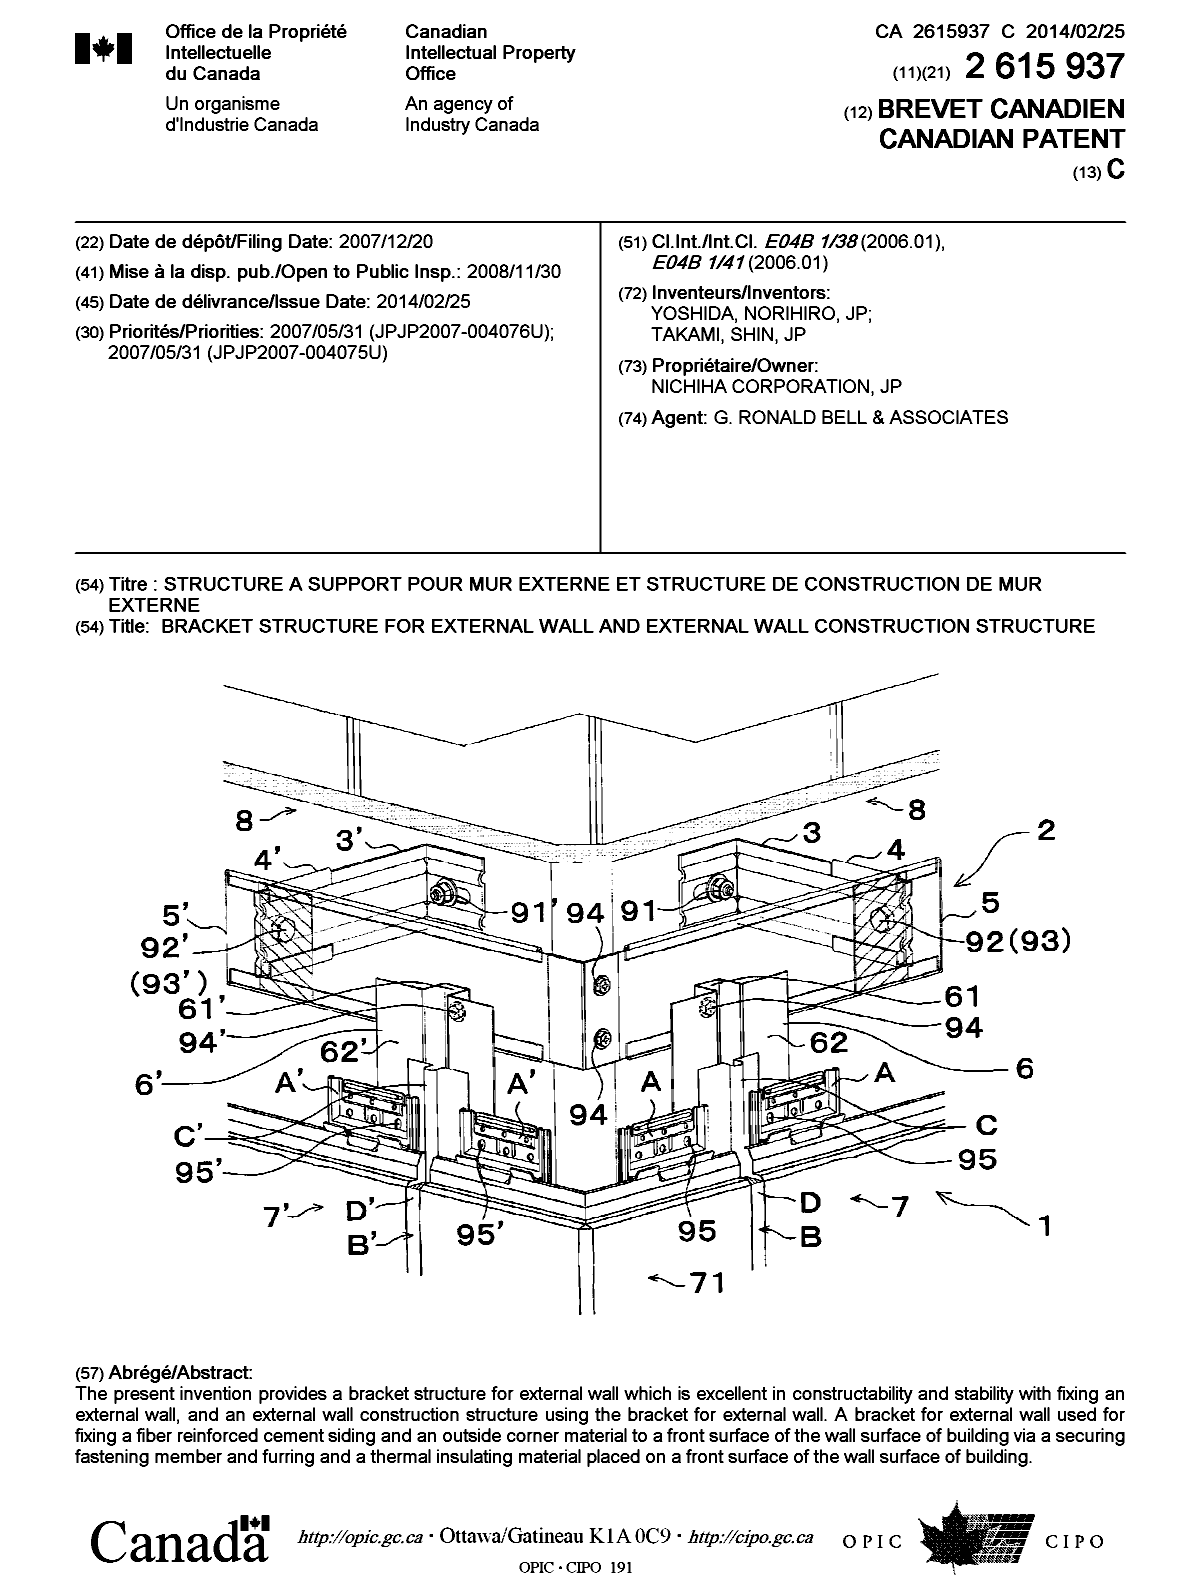 Document de brevet canadien 2615937. Page couverture 20140127. Image 1 de 1